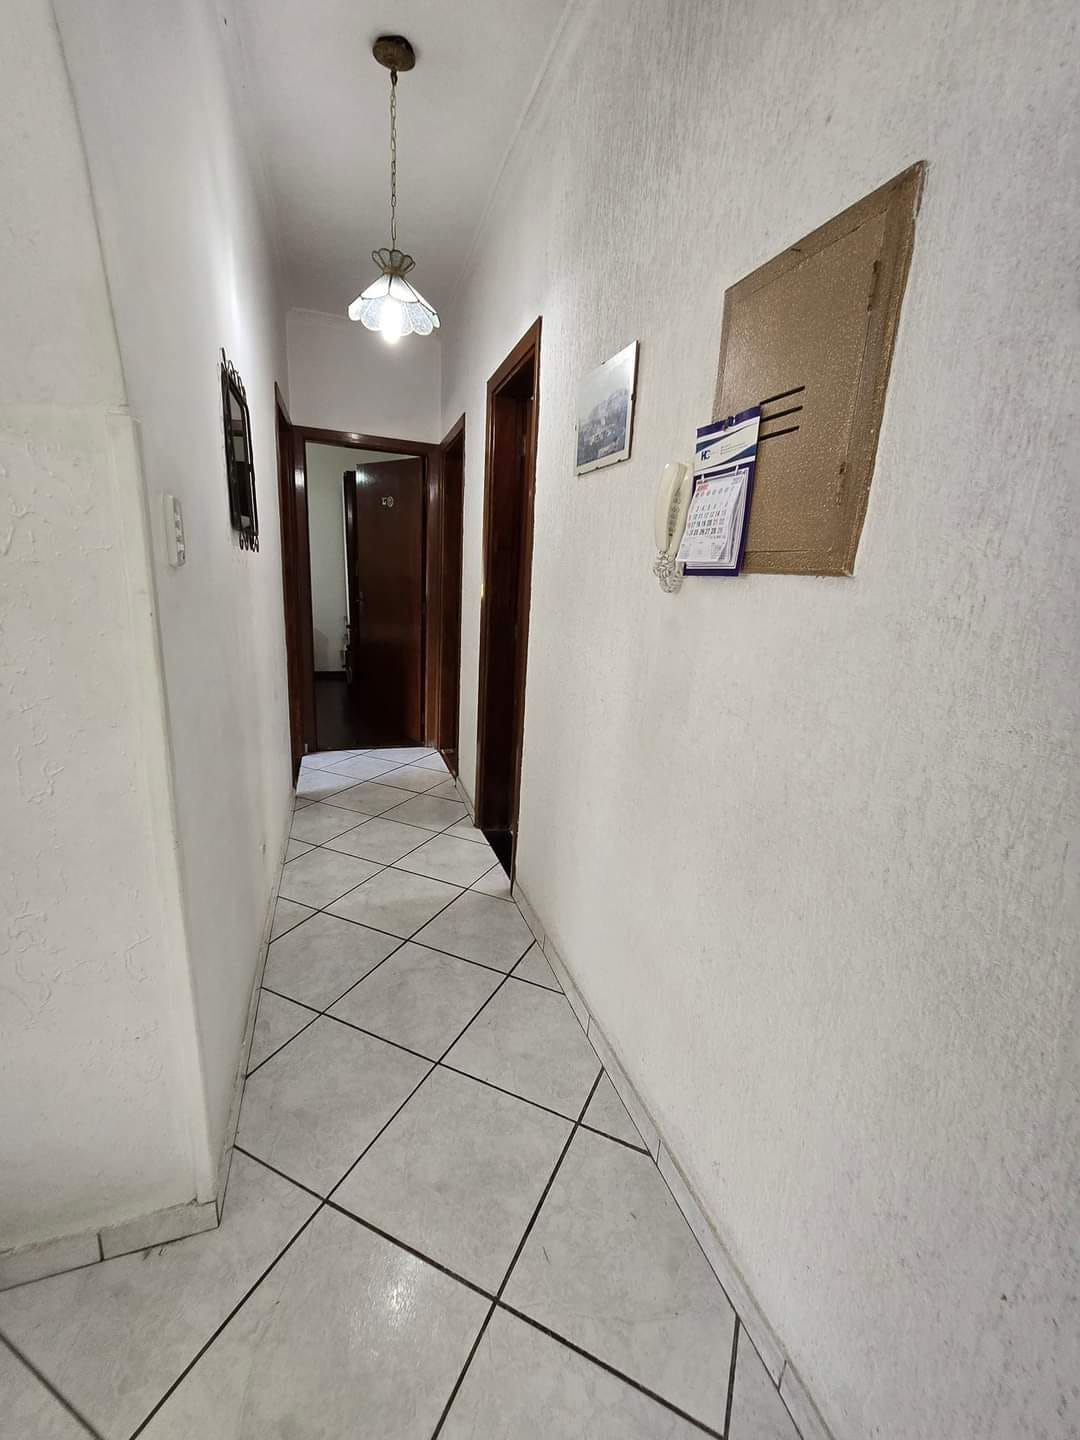 Pompeia Apartamento de 3 dormitorios predio de 3 andares garagem demarcada - foto 9